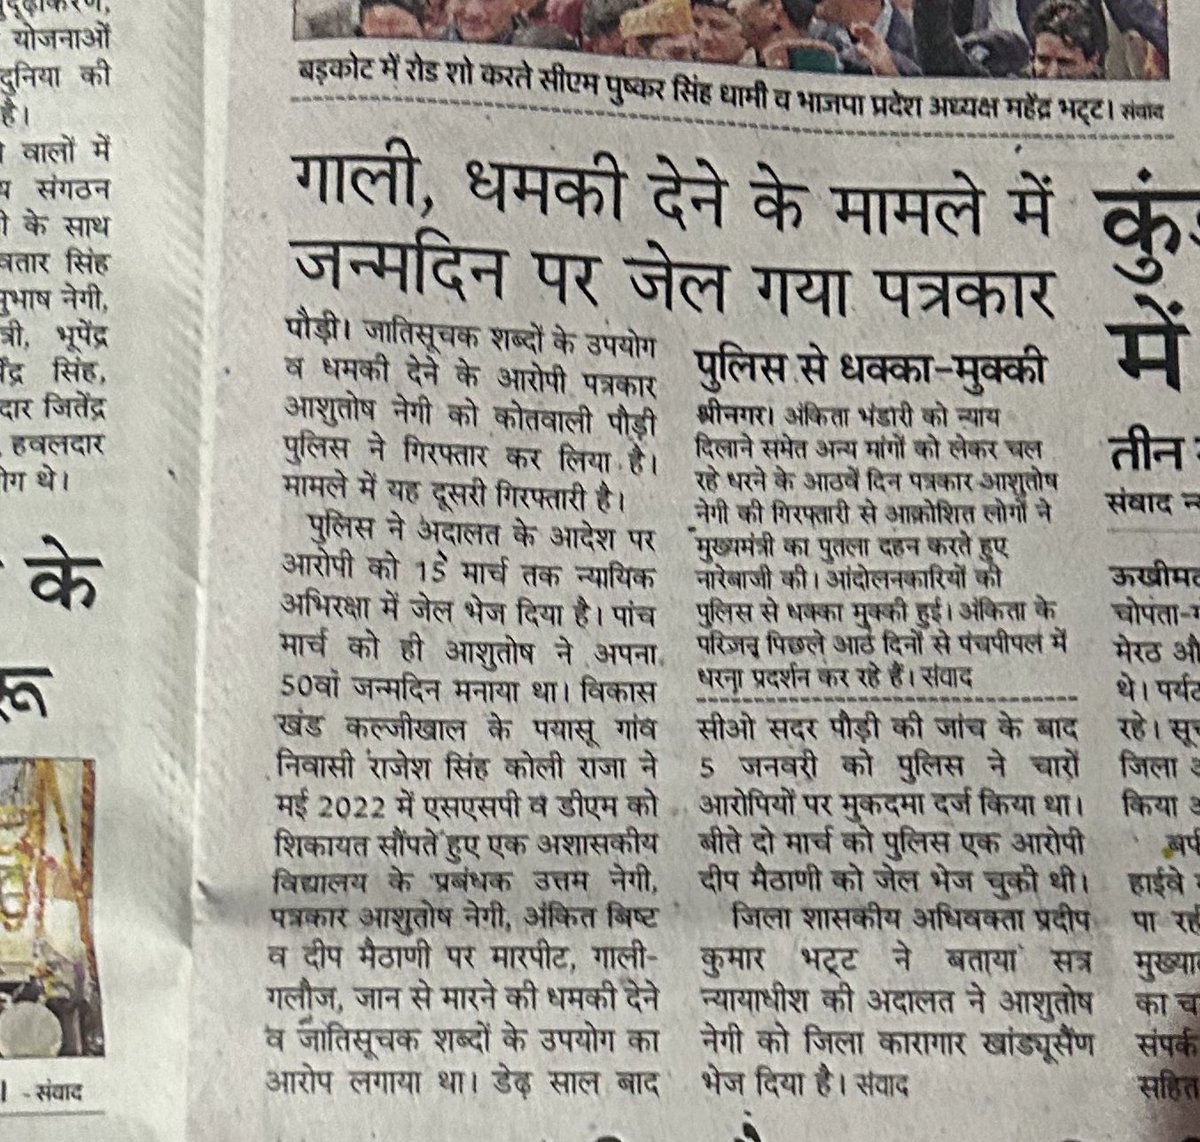 @MonkPahadi आएगा भी कैसे, जब तक मोदी मीडिया अख़बार में खबर को ऐसे दिखाएगा
ये @AmarUjalaNews  है, बहिष्कार ज़रूरी है ऐसी बिकी हुई मीडिया का
#JusticeForAnkitaBhandari